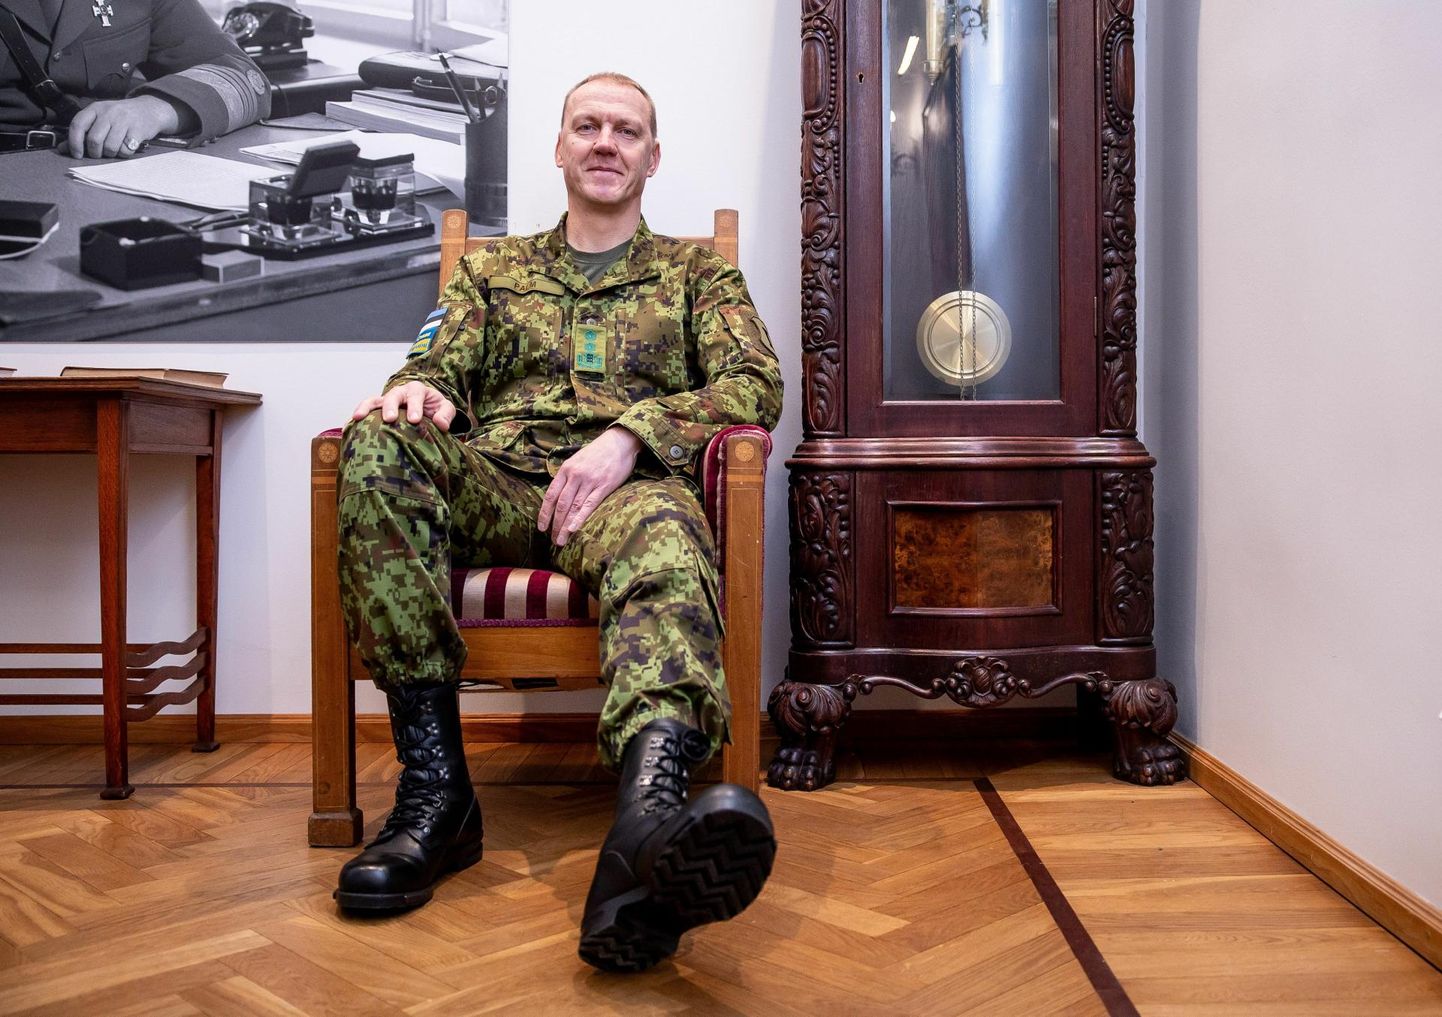 Kindralmajor Veiko-Vello Palm möönab, et kui mõned inimesed tulevad ajateenistusse arusaamaga, et mis see Eesti kaitsevägi üleüldse suudab või mis see Eesti riik ka väärt on, siis üldjuhul need vaated muutuvad ajateenistuse jooksul.